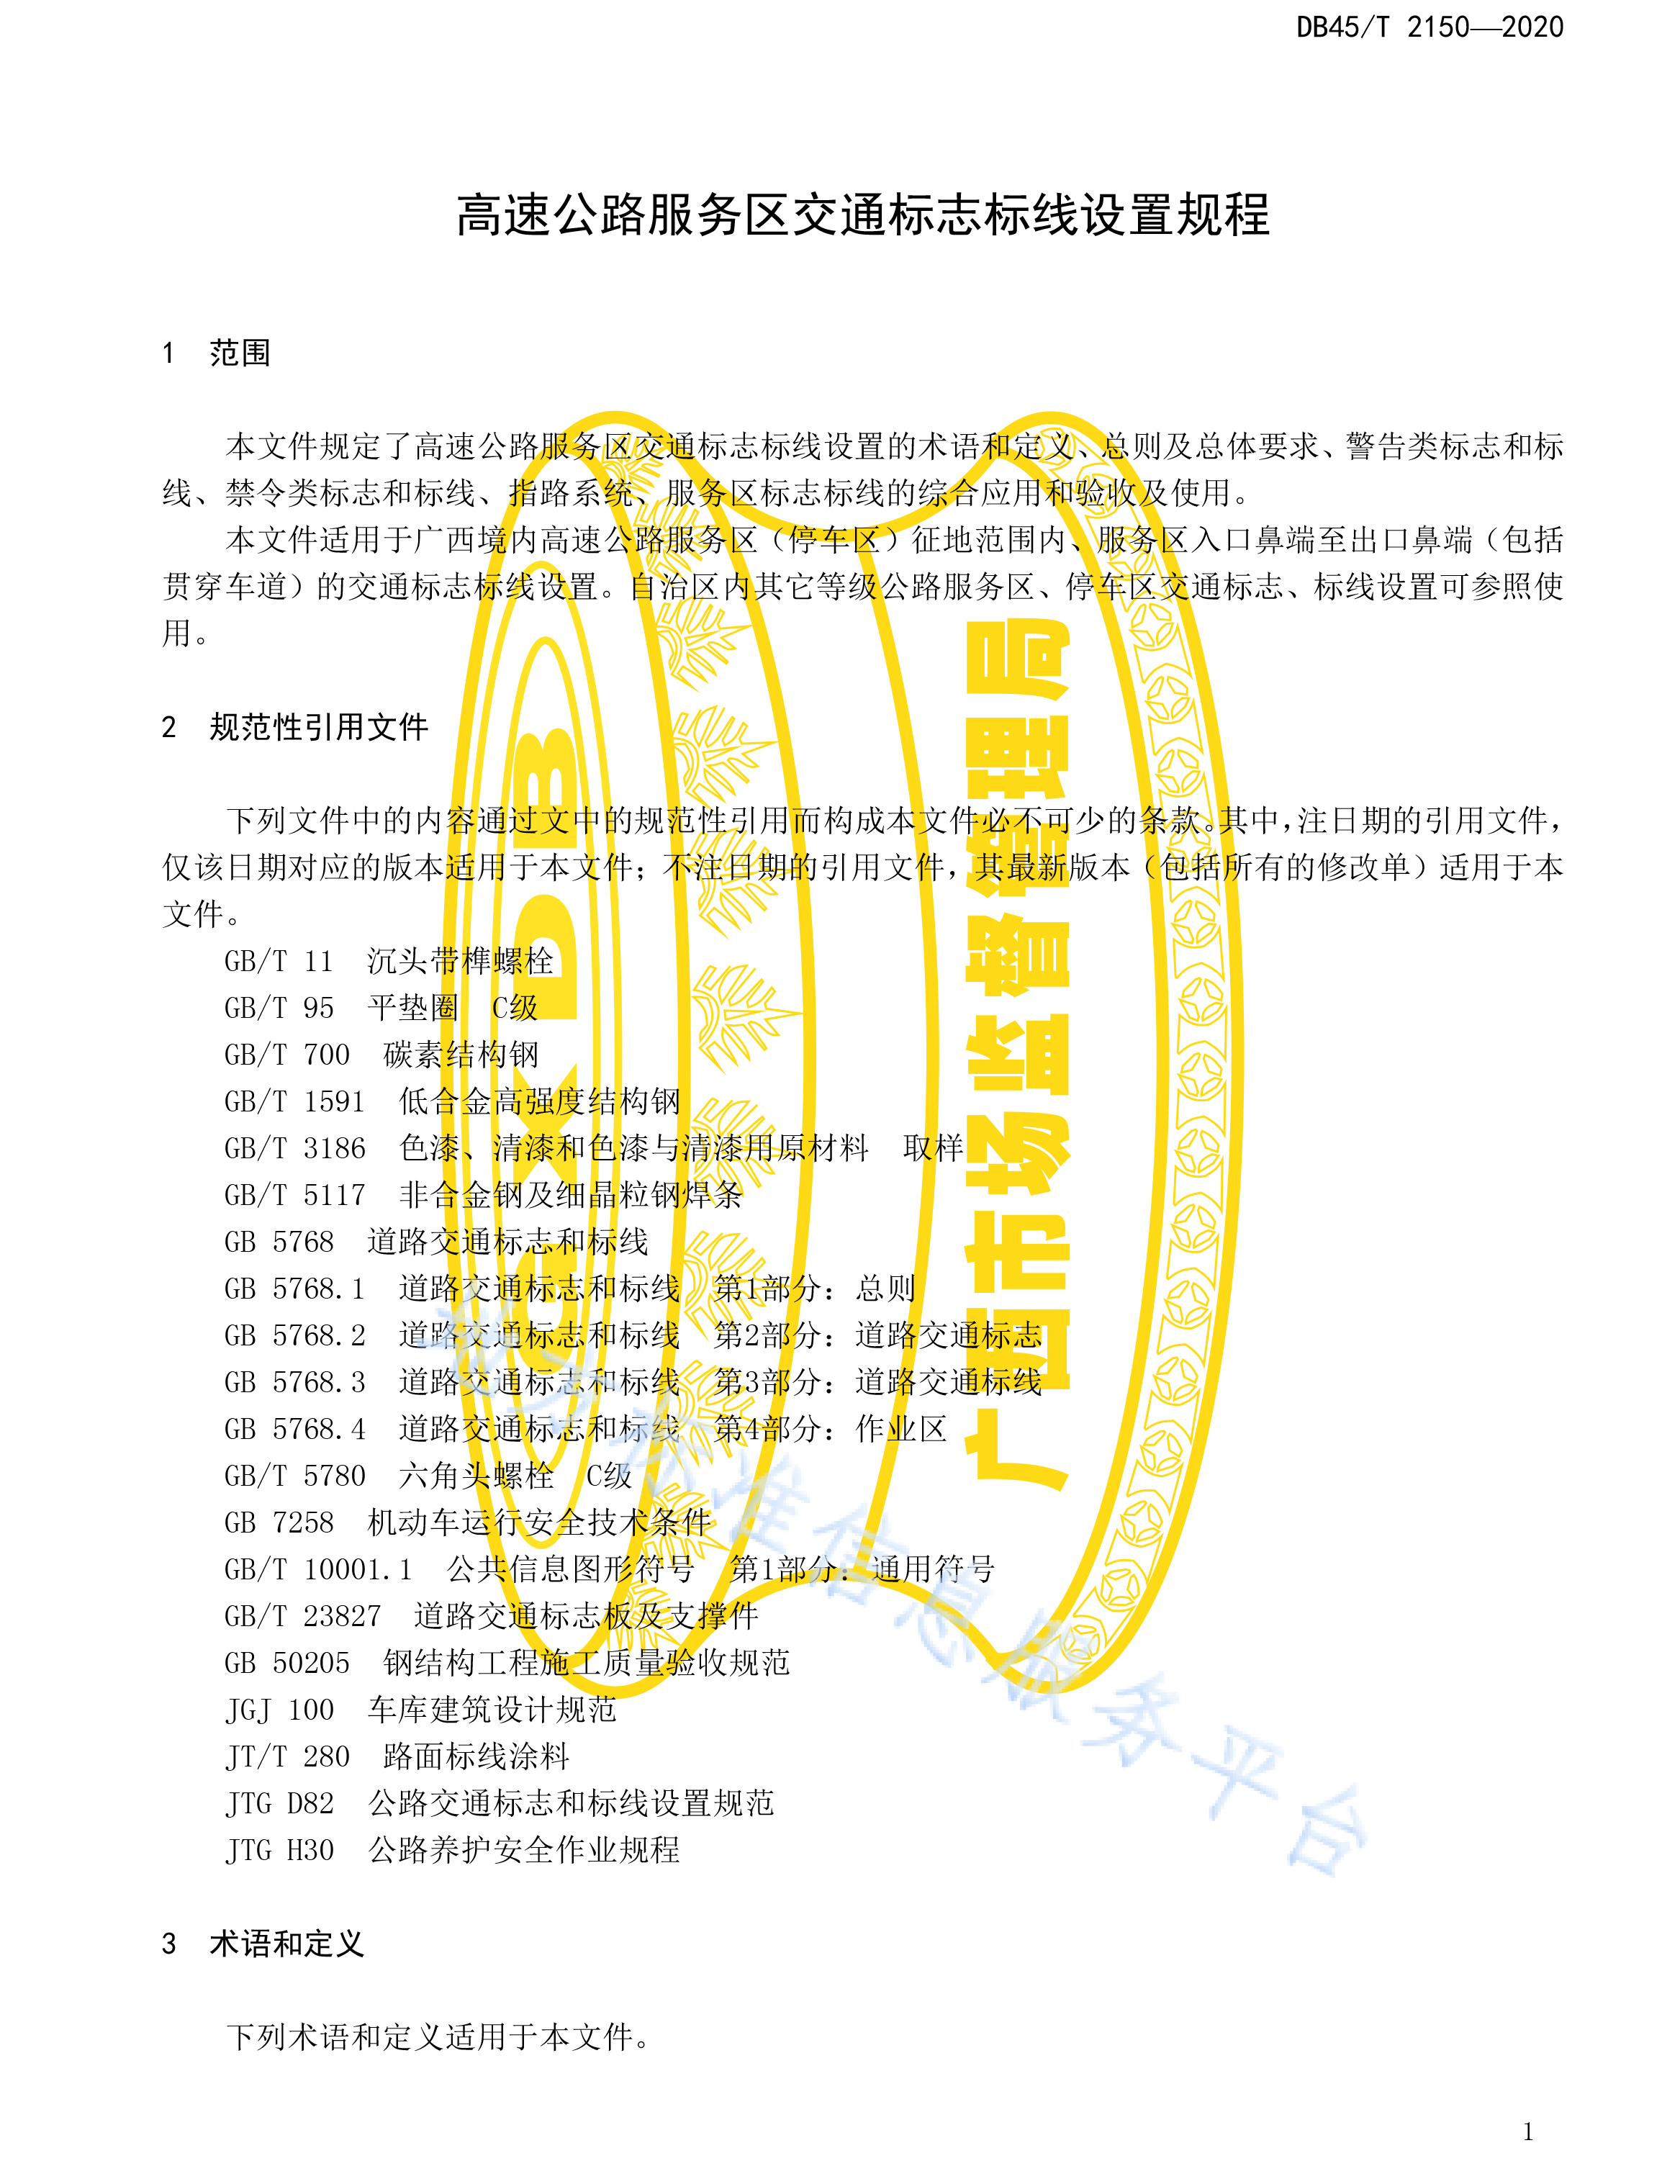 广西DB 45T 2150—2020高速公路服务区交通标志标线设置规程-7.jpg